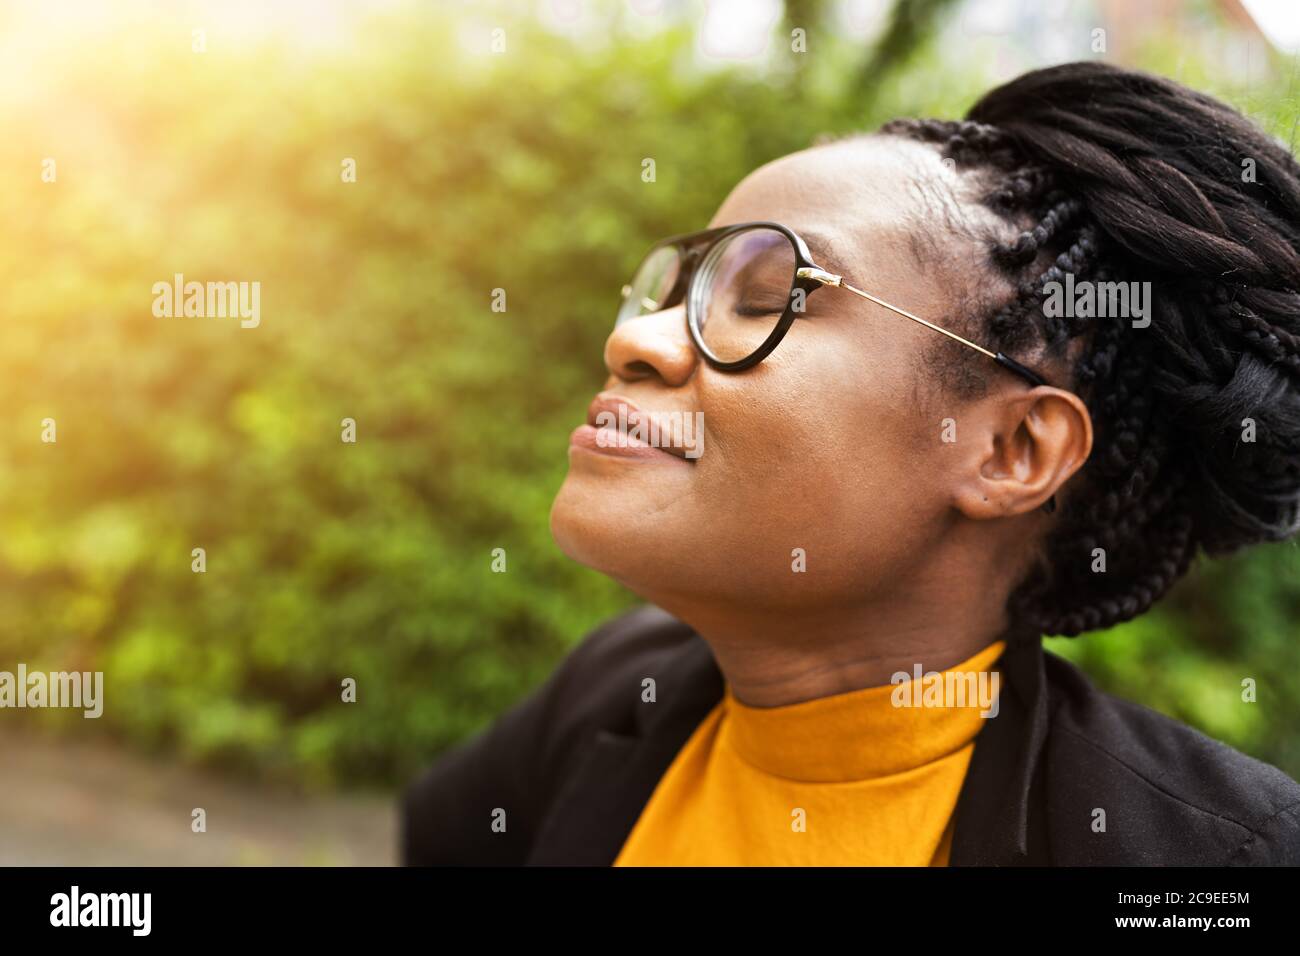 African Woman respirare aria pulita in natura con gli occhi chiusi Foto Stock